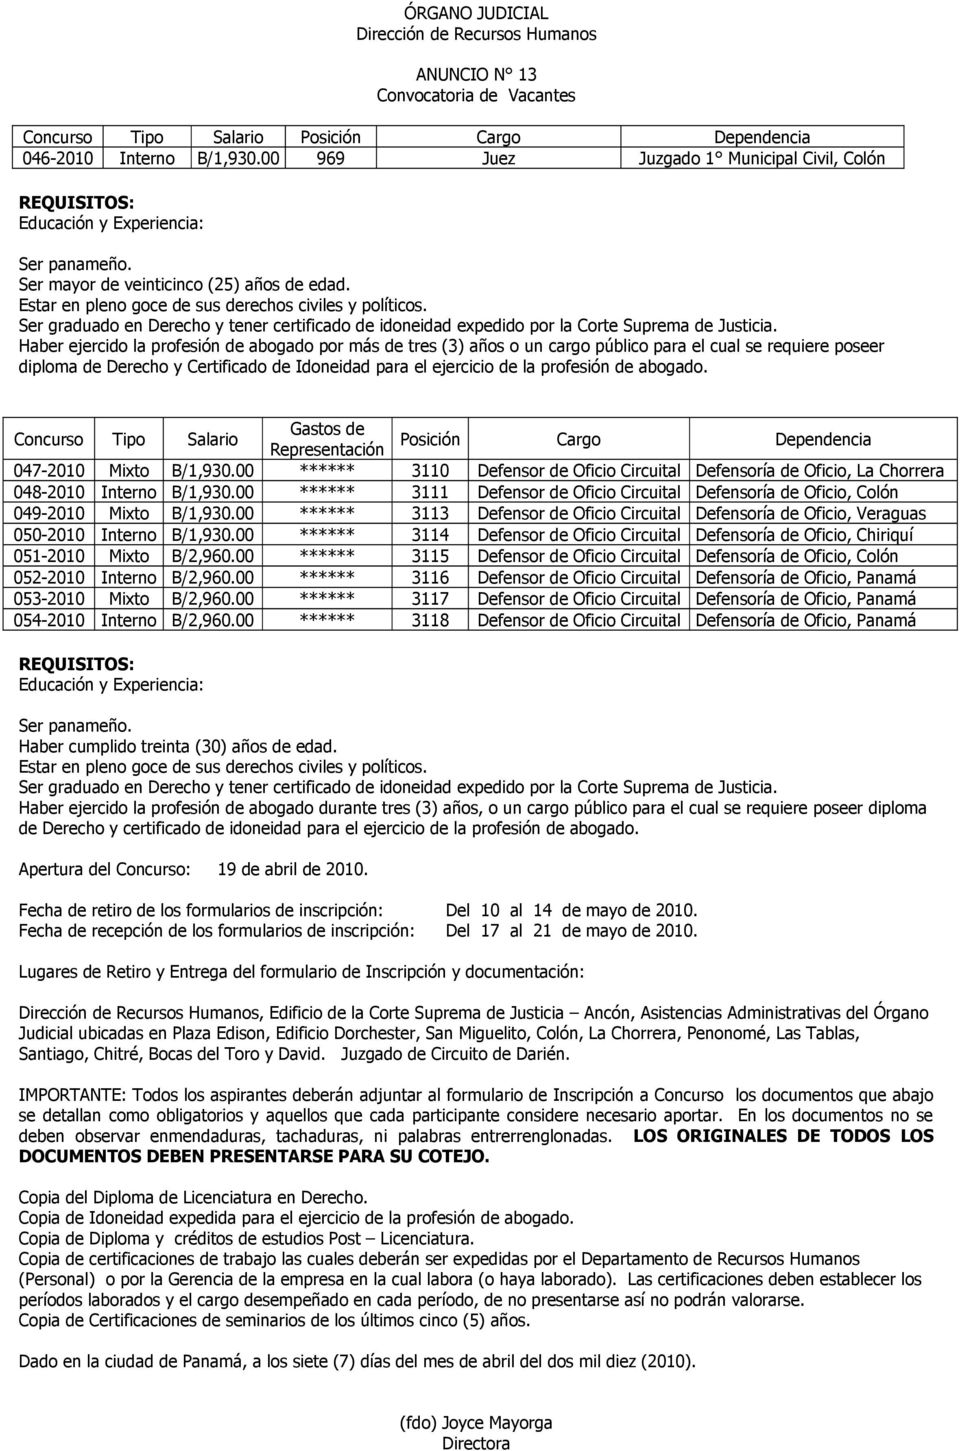 abogado. Concurso Tipo Salario Gastos de Representación Posición Cargo Dependencia 047-2010 Mixto B/1,930.